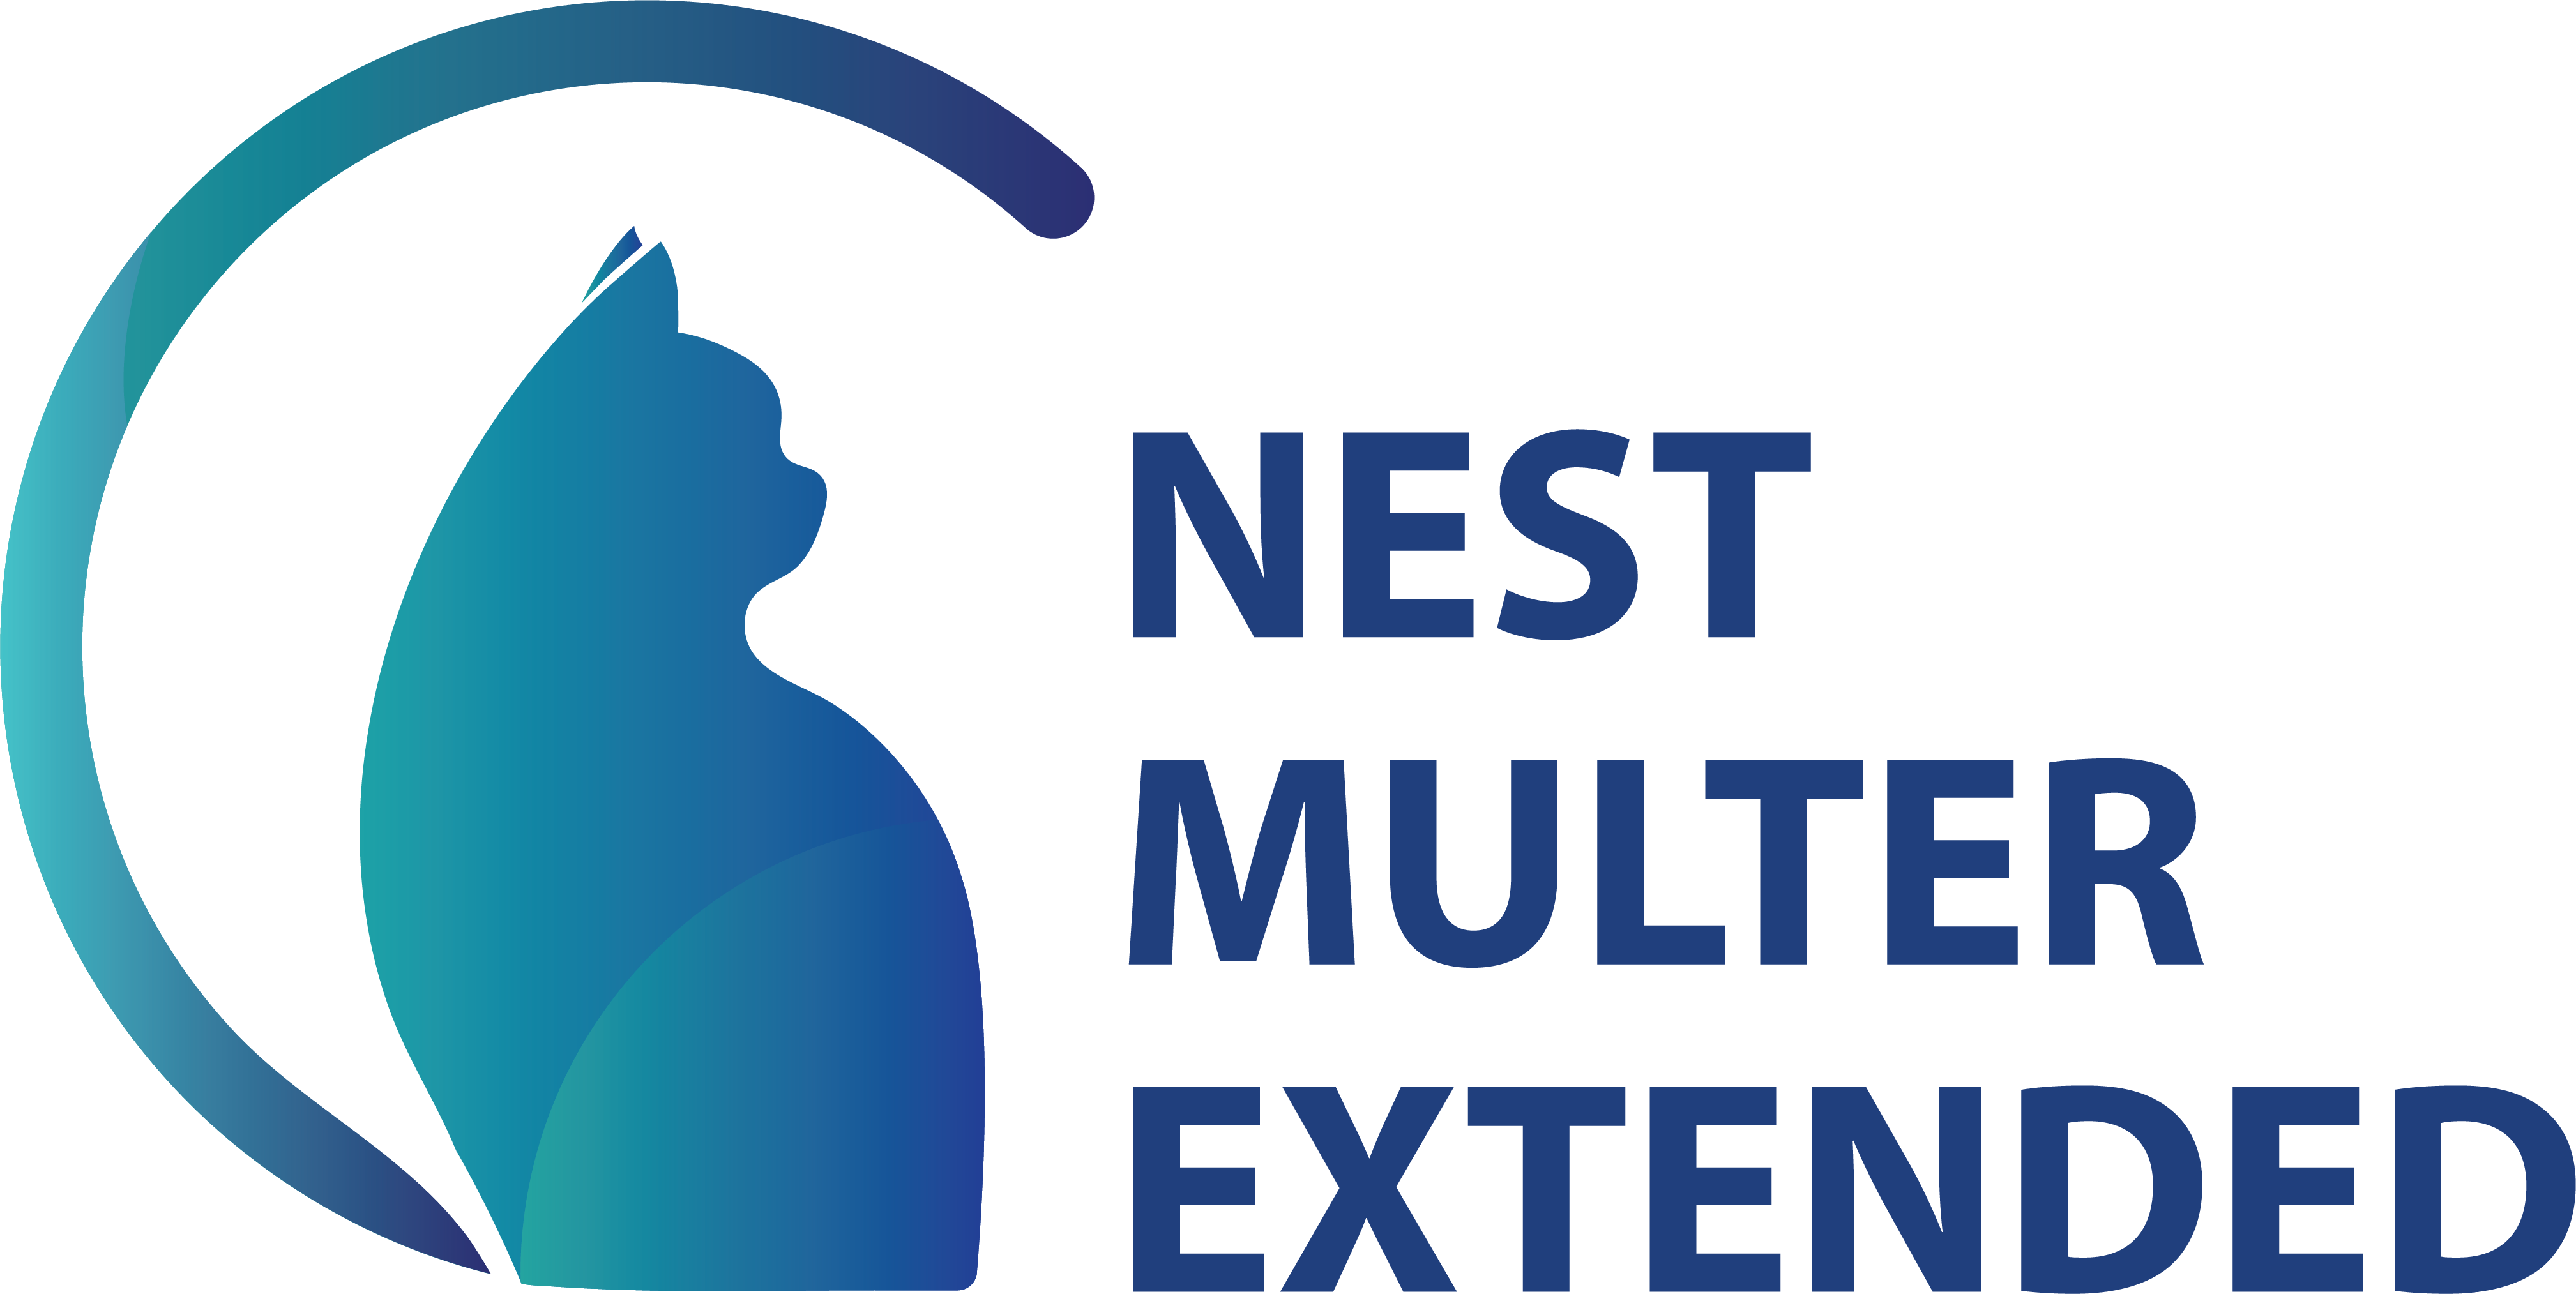 NestJS Multer Extended Logo